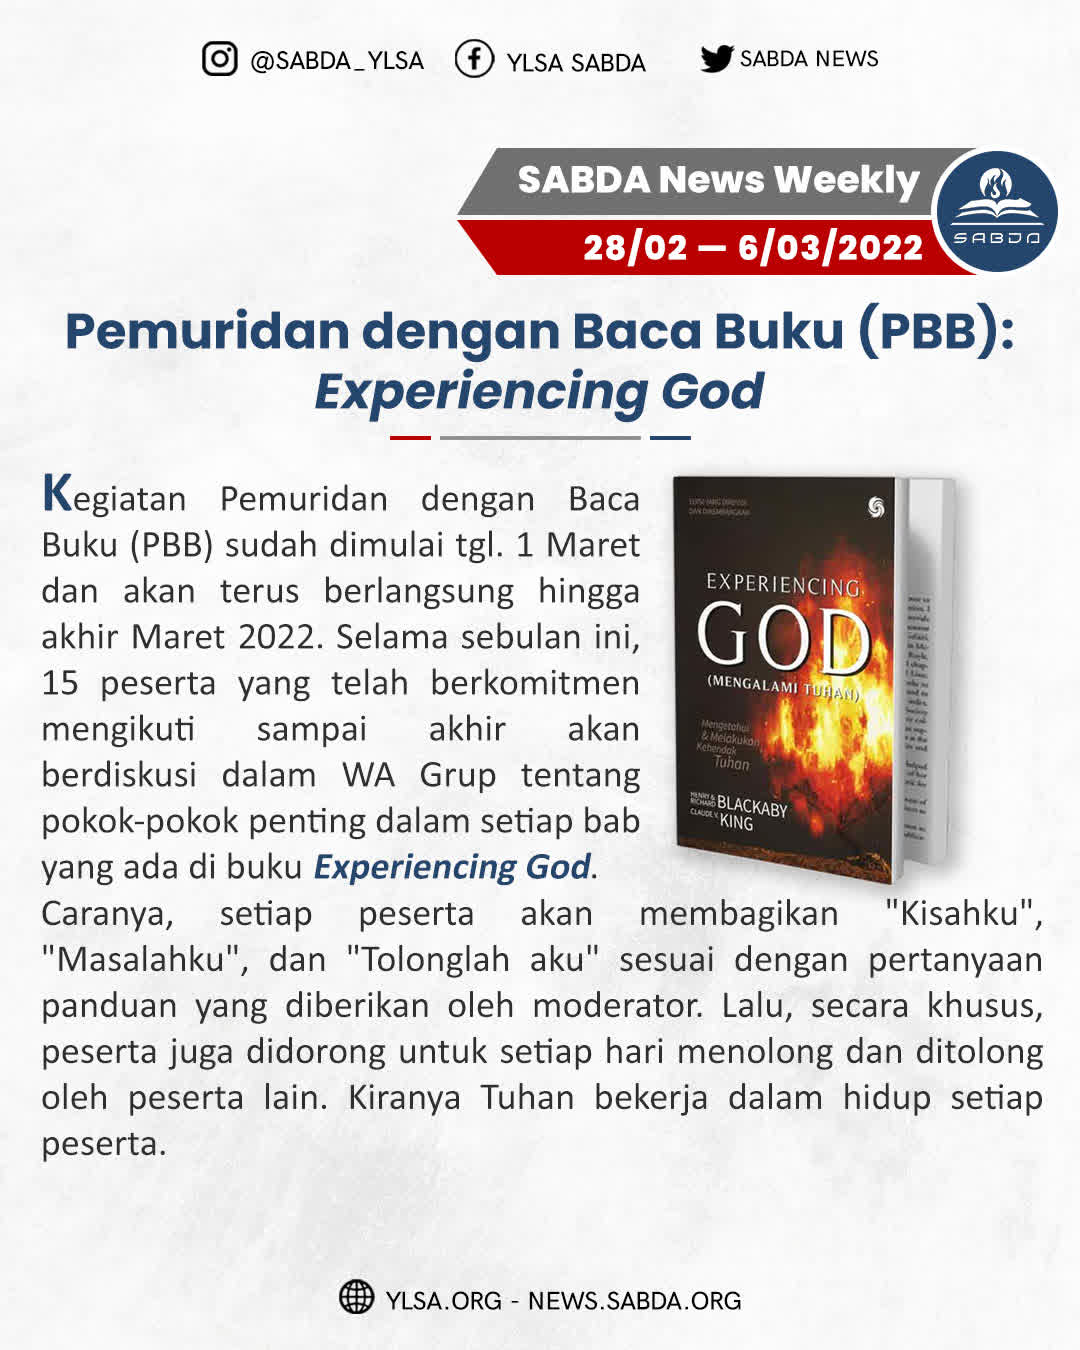 Pemuridan dengan Baca Buku (PBB) Experiencing GOD